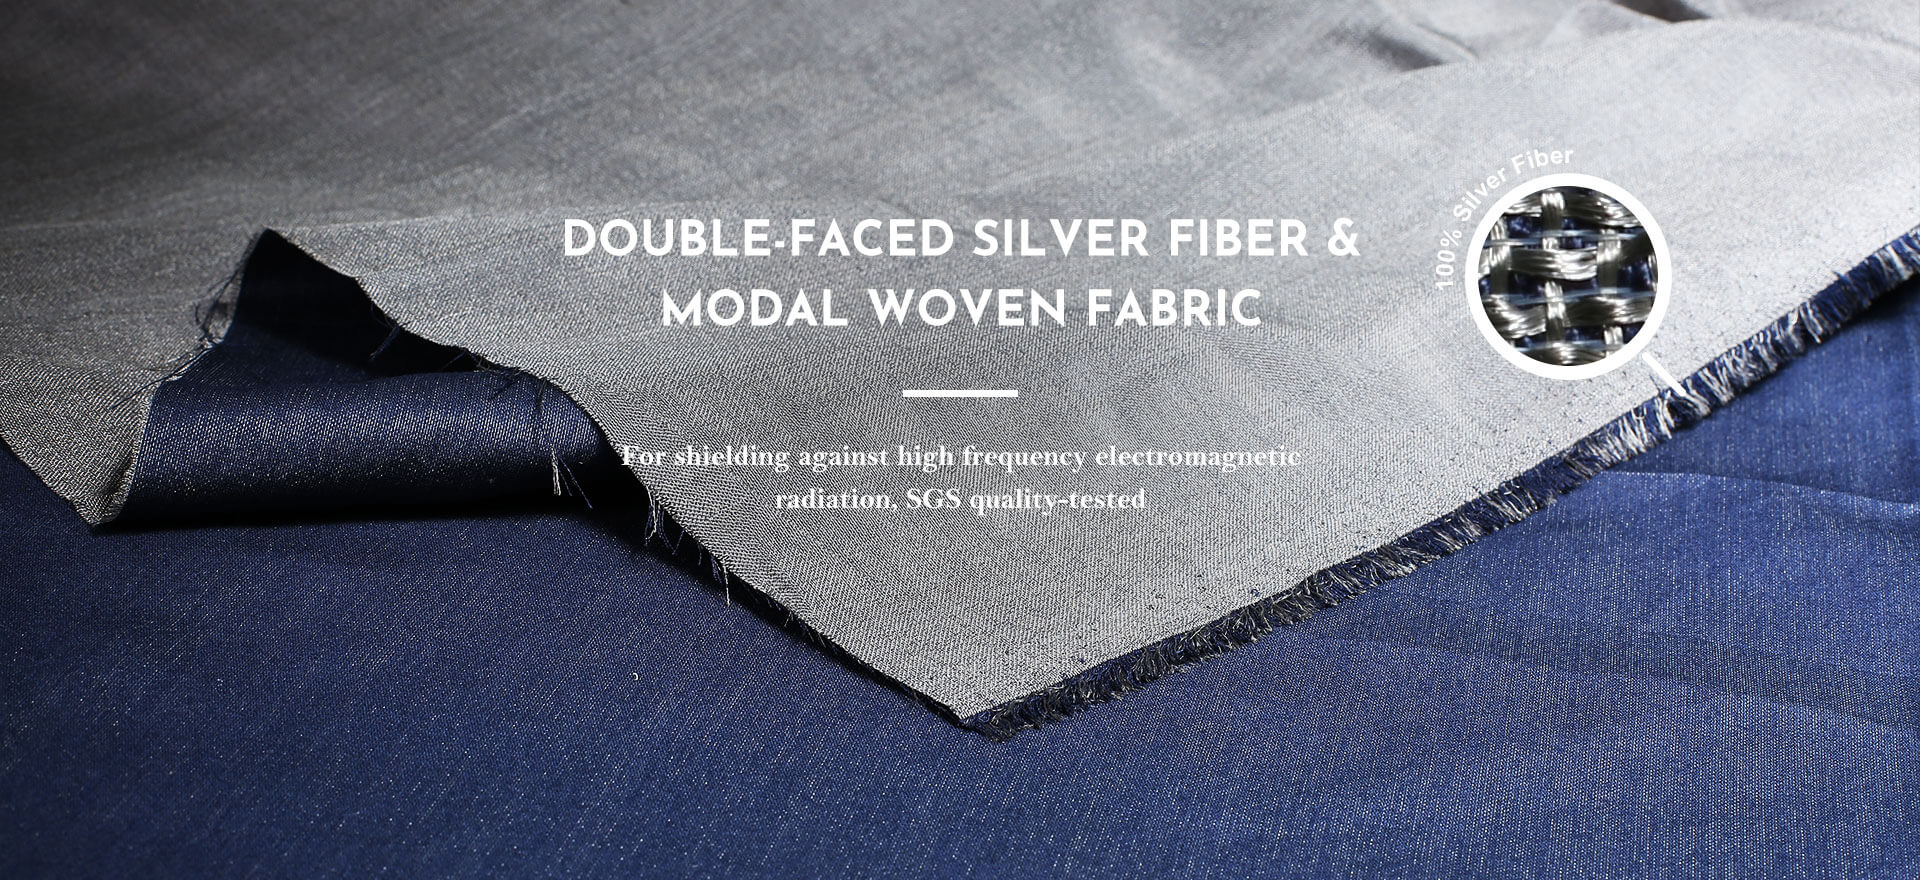 Double-faced Silver Fiber & Modal Woven Fabric